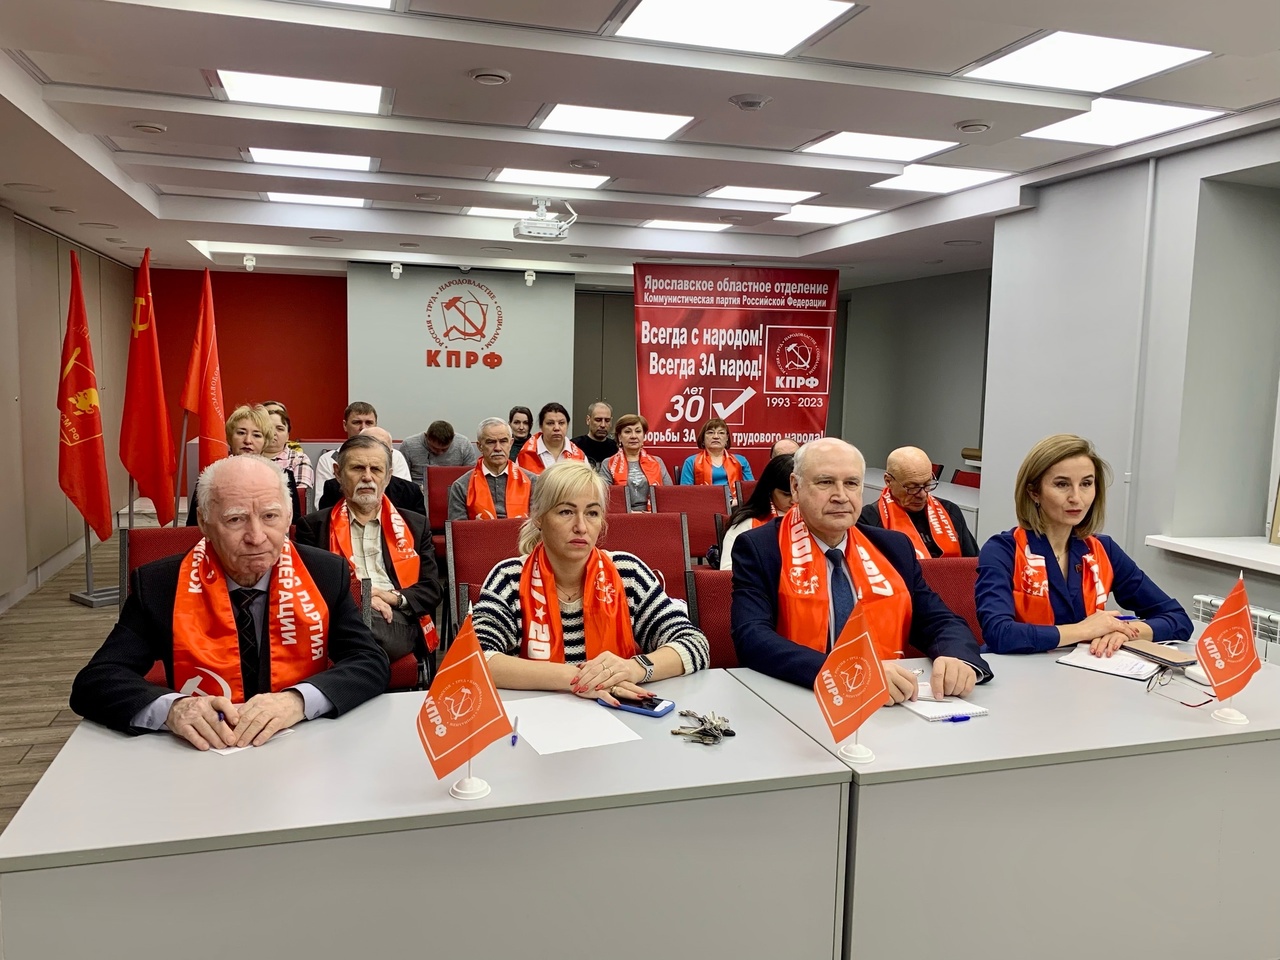 Ярославские коммунисты приняли участие в торжественном собрании, посвященном 30-летию КПРФ